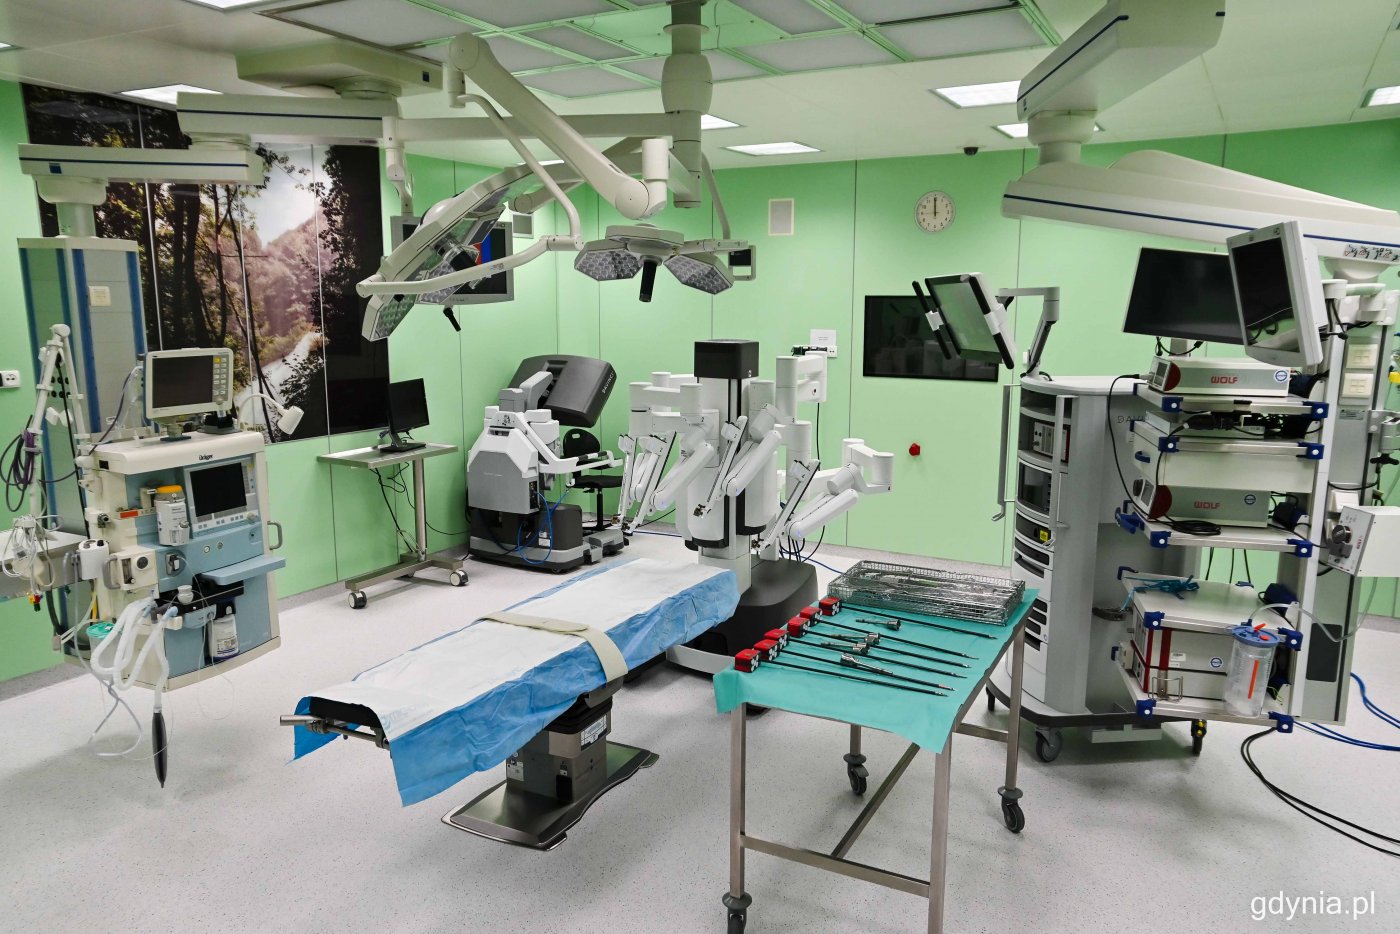 Tak w momencie otwarcia prezentowała się sala w Szpitalu Morskim im. PCK w Gdyni-Redłowie, gdzie funkcjonuje robot medyczny Da Vinci, fot. Kamil Złoch / archiwalne